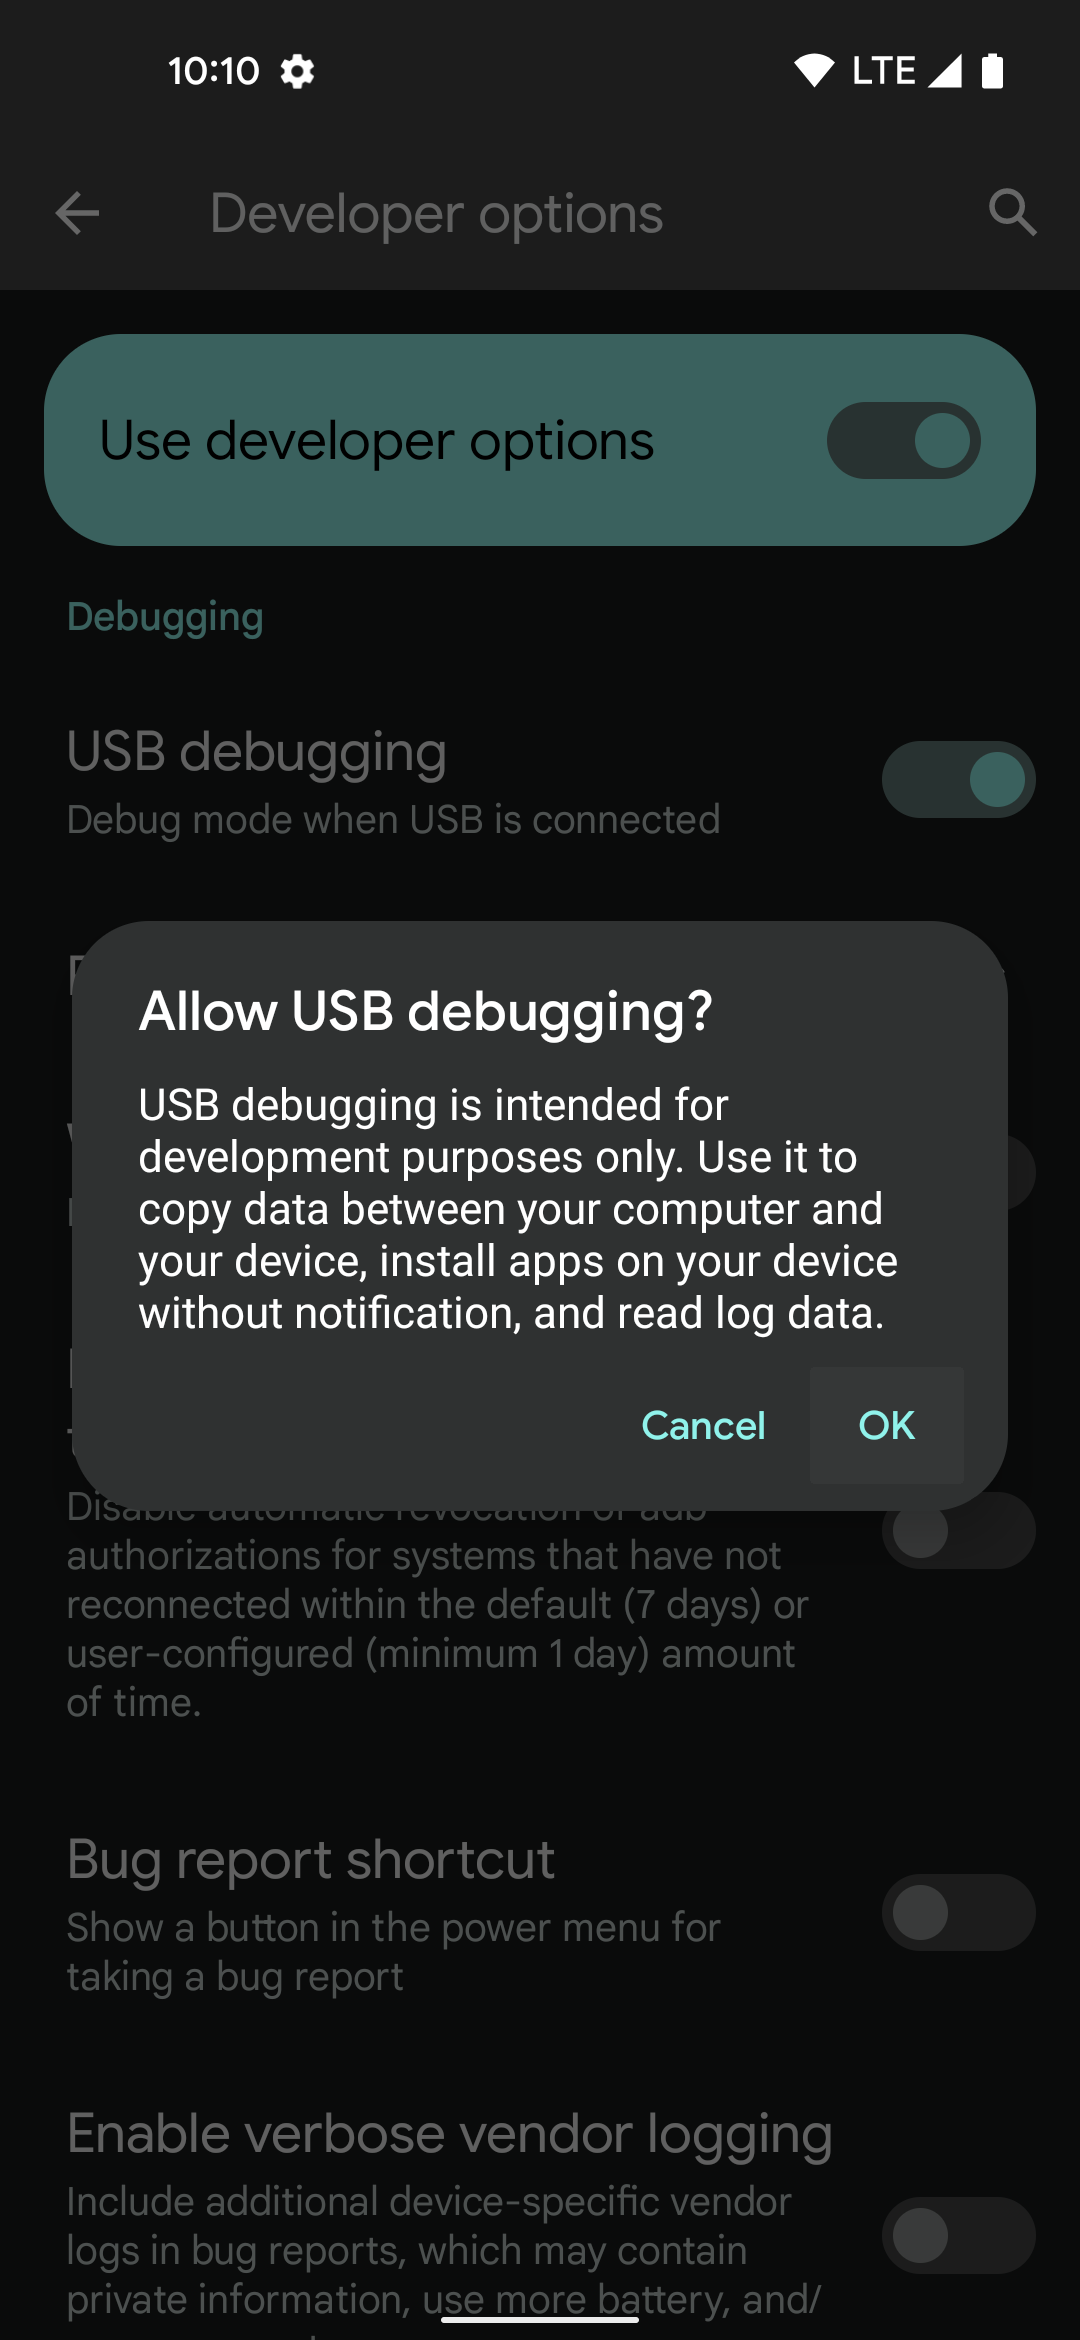 Ligando o "Depuração USB" recurso no menu de opções do desenvolvedor.